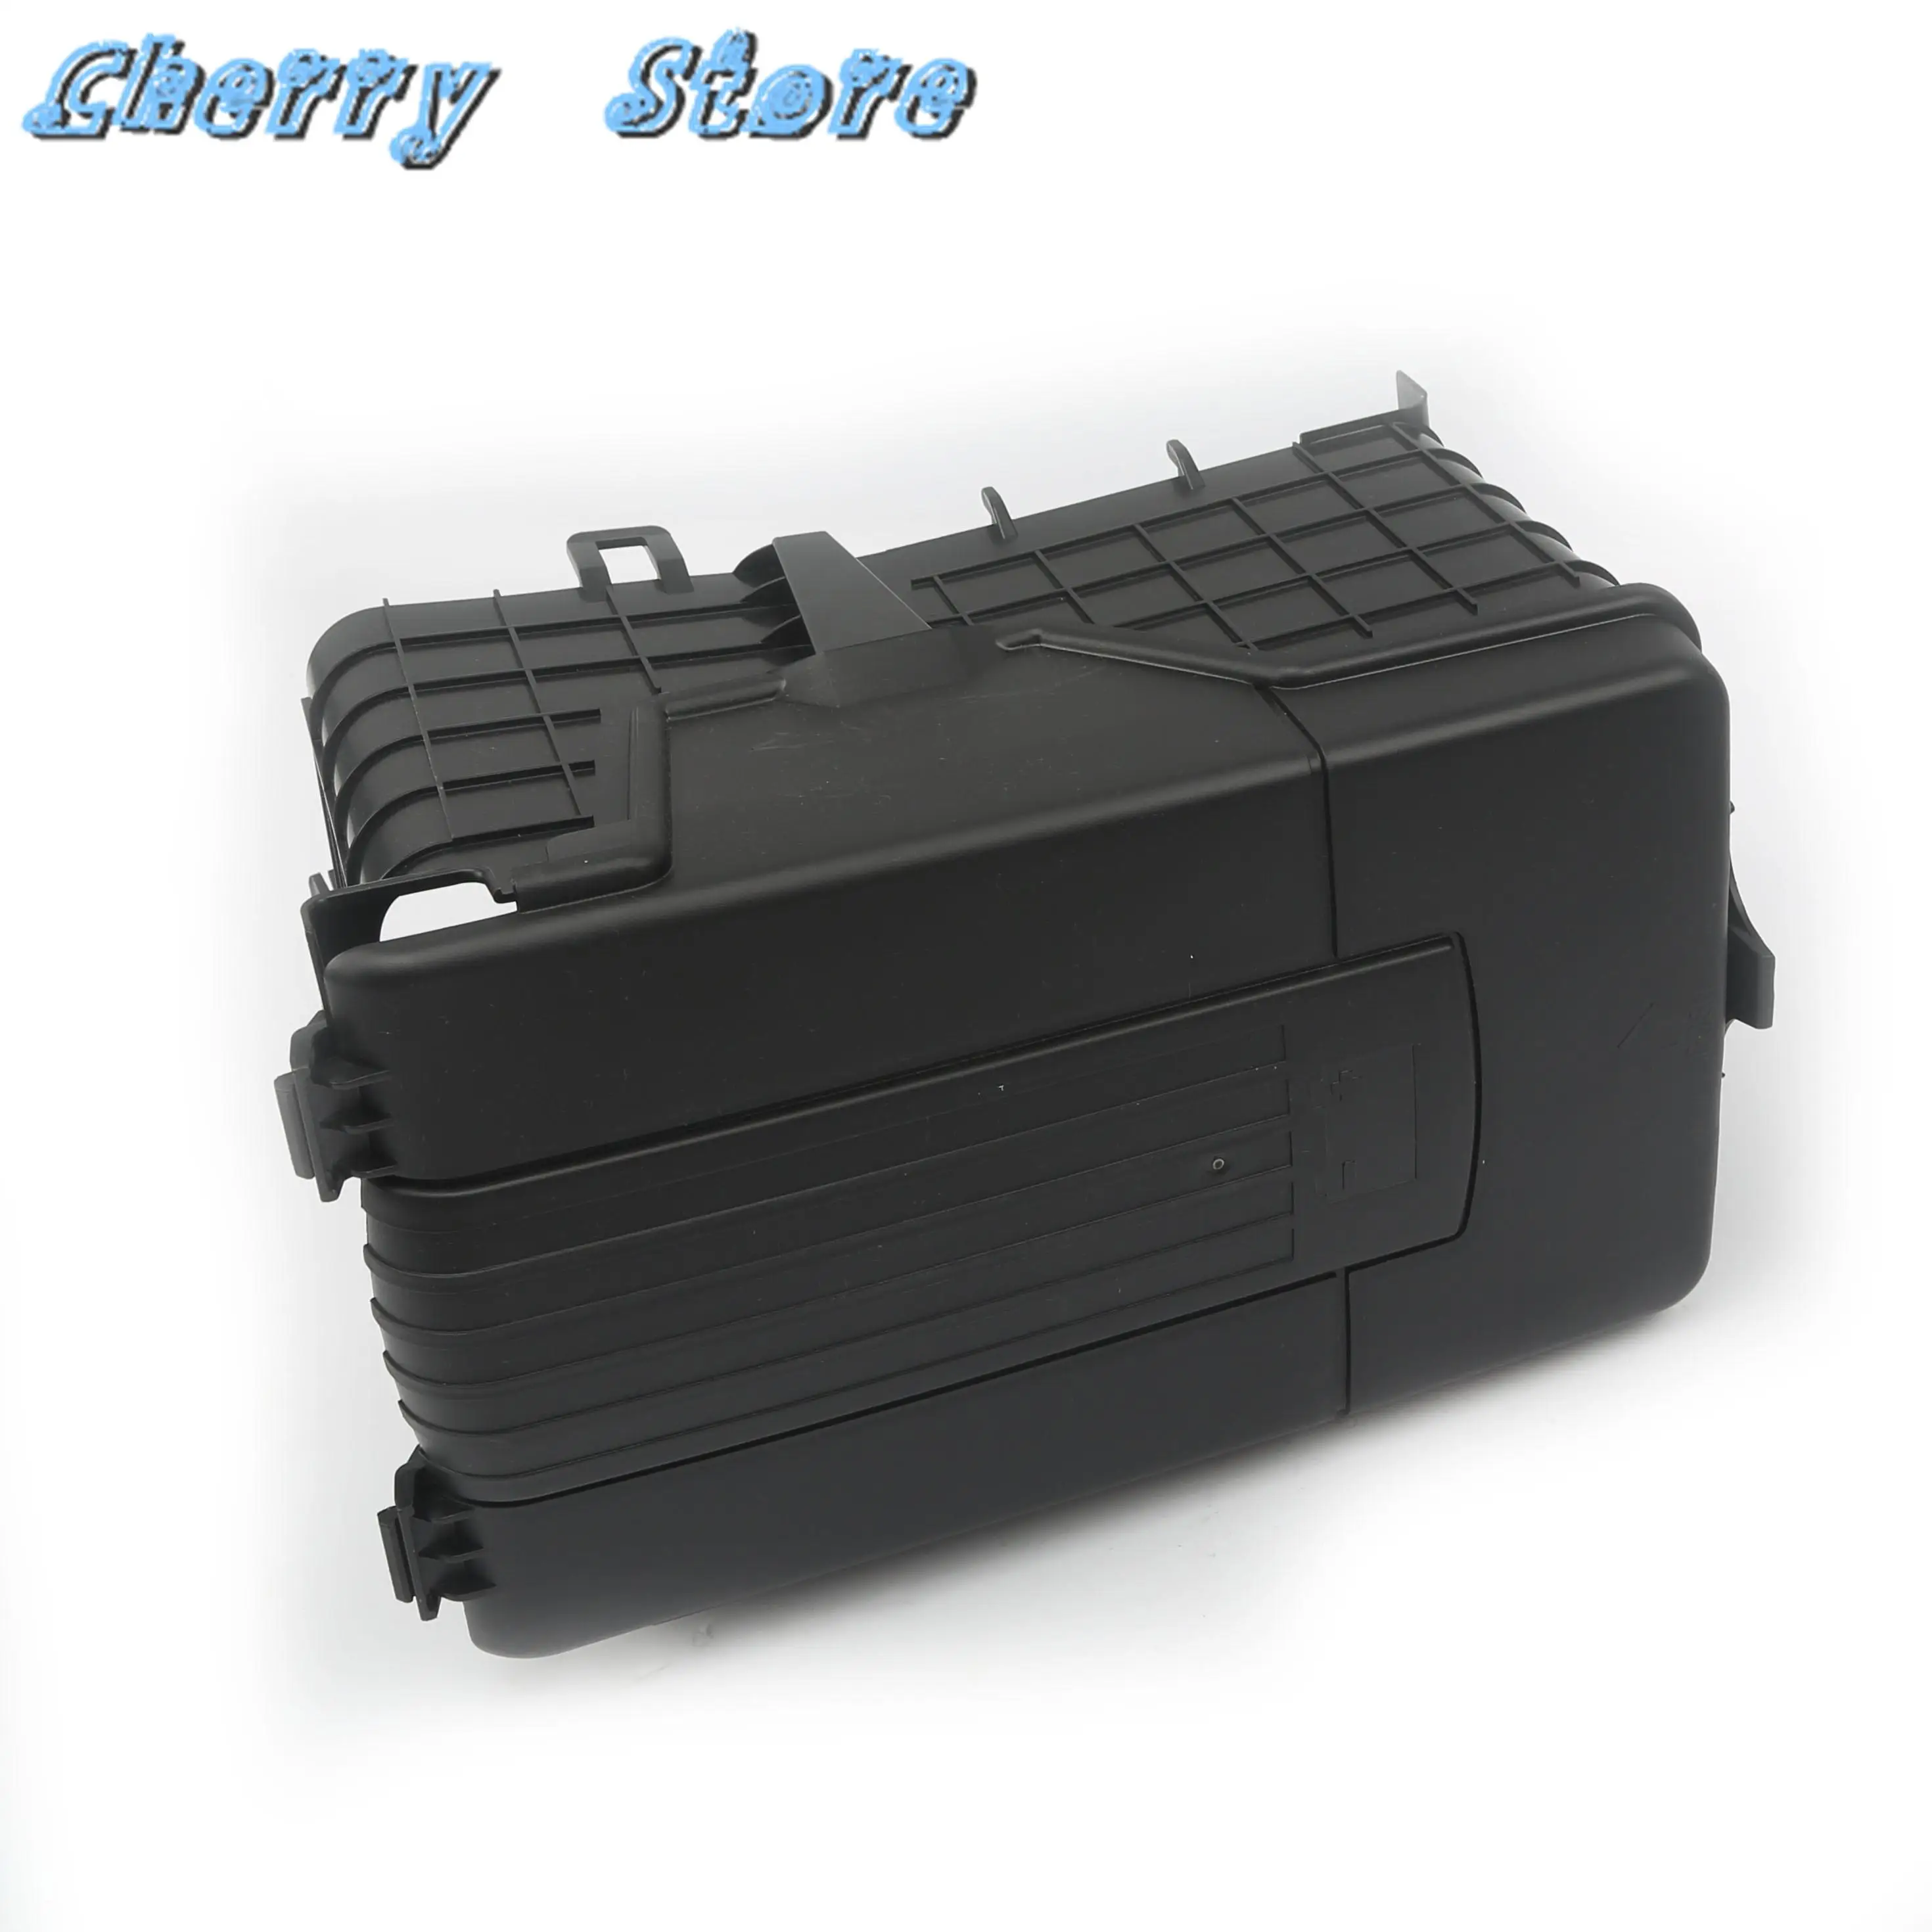 Autobatterie abdeckung Staubs chutz box für Passat B6 MK5 MK6 A3 Leon 1  KD915335 Kunststoff - AliExpress